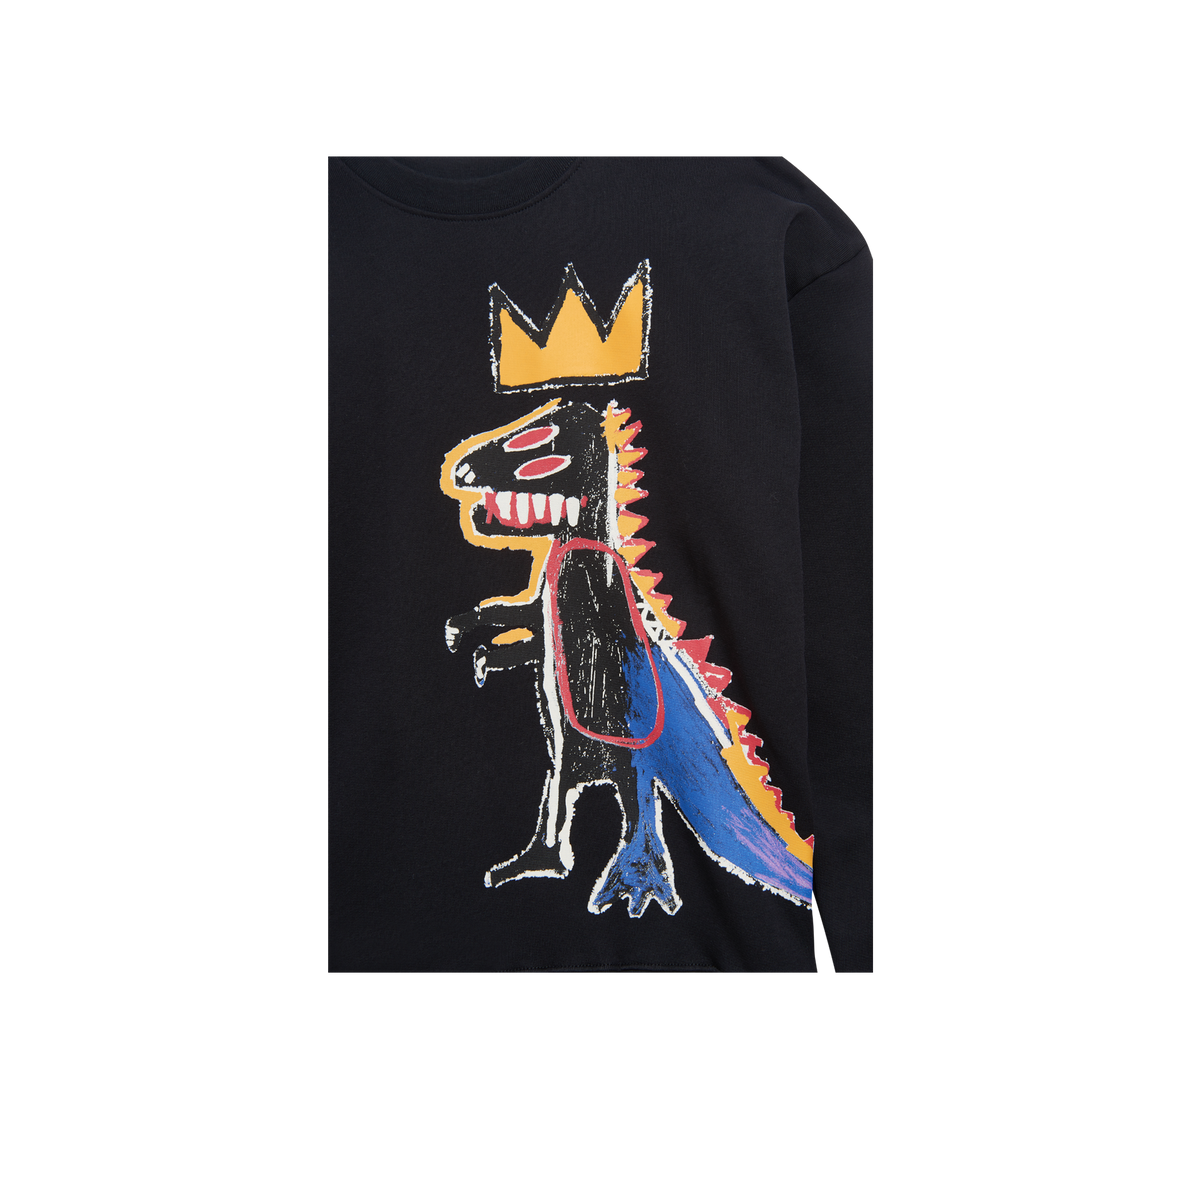 Basquiat "Pez Dispenser" Printed Crewneck